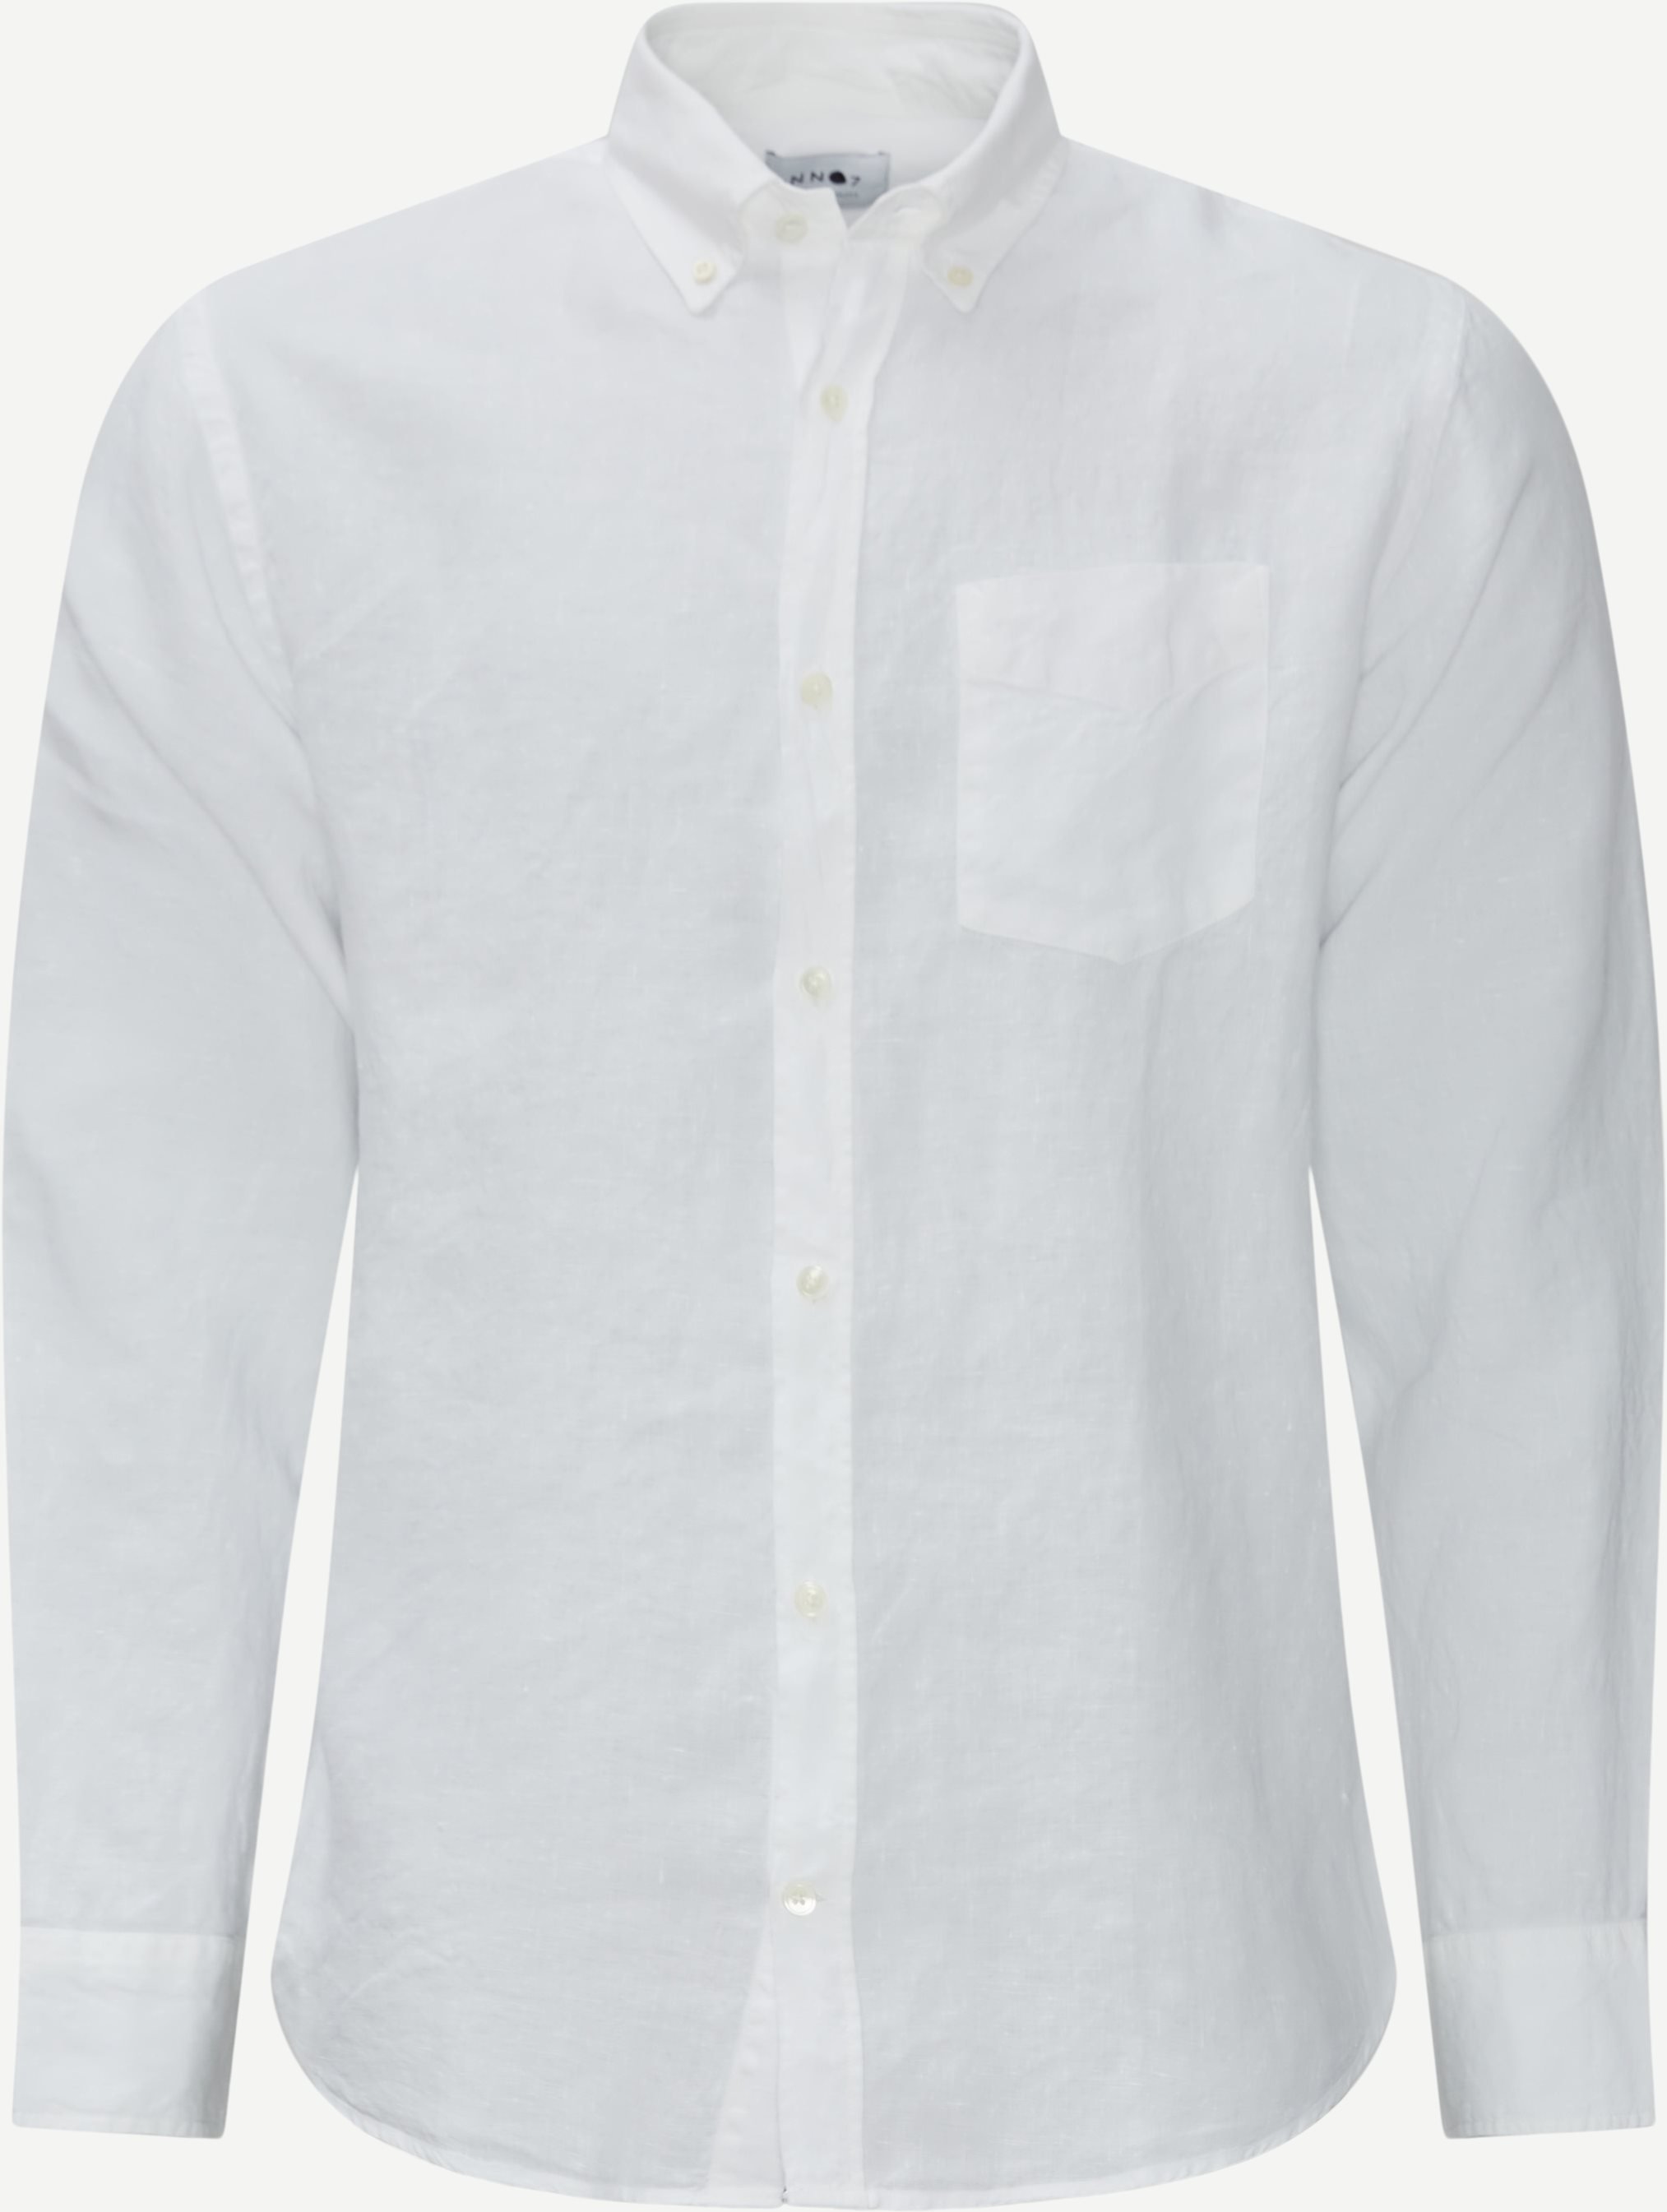 NN07 Shirts LEVON 5706 White